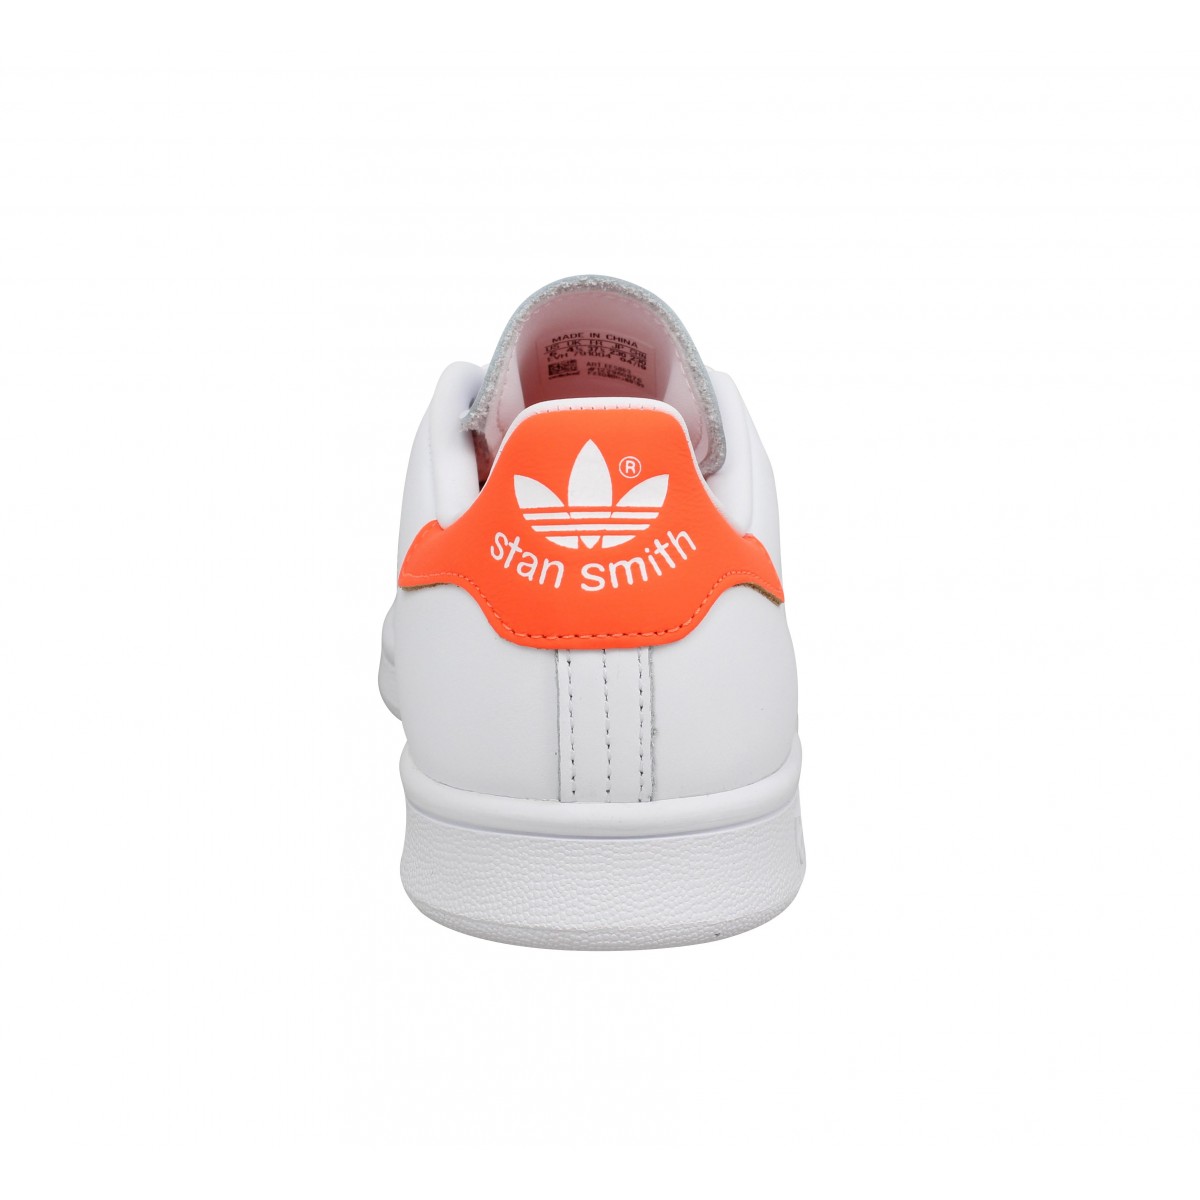 Adidas stan smith cuir femme blanc orange femme | Fanny chaussures